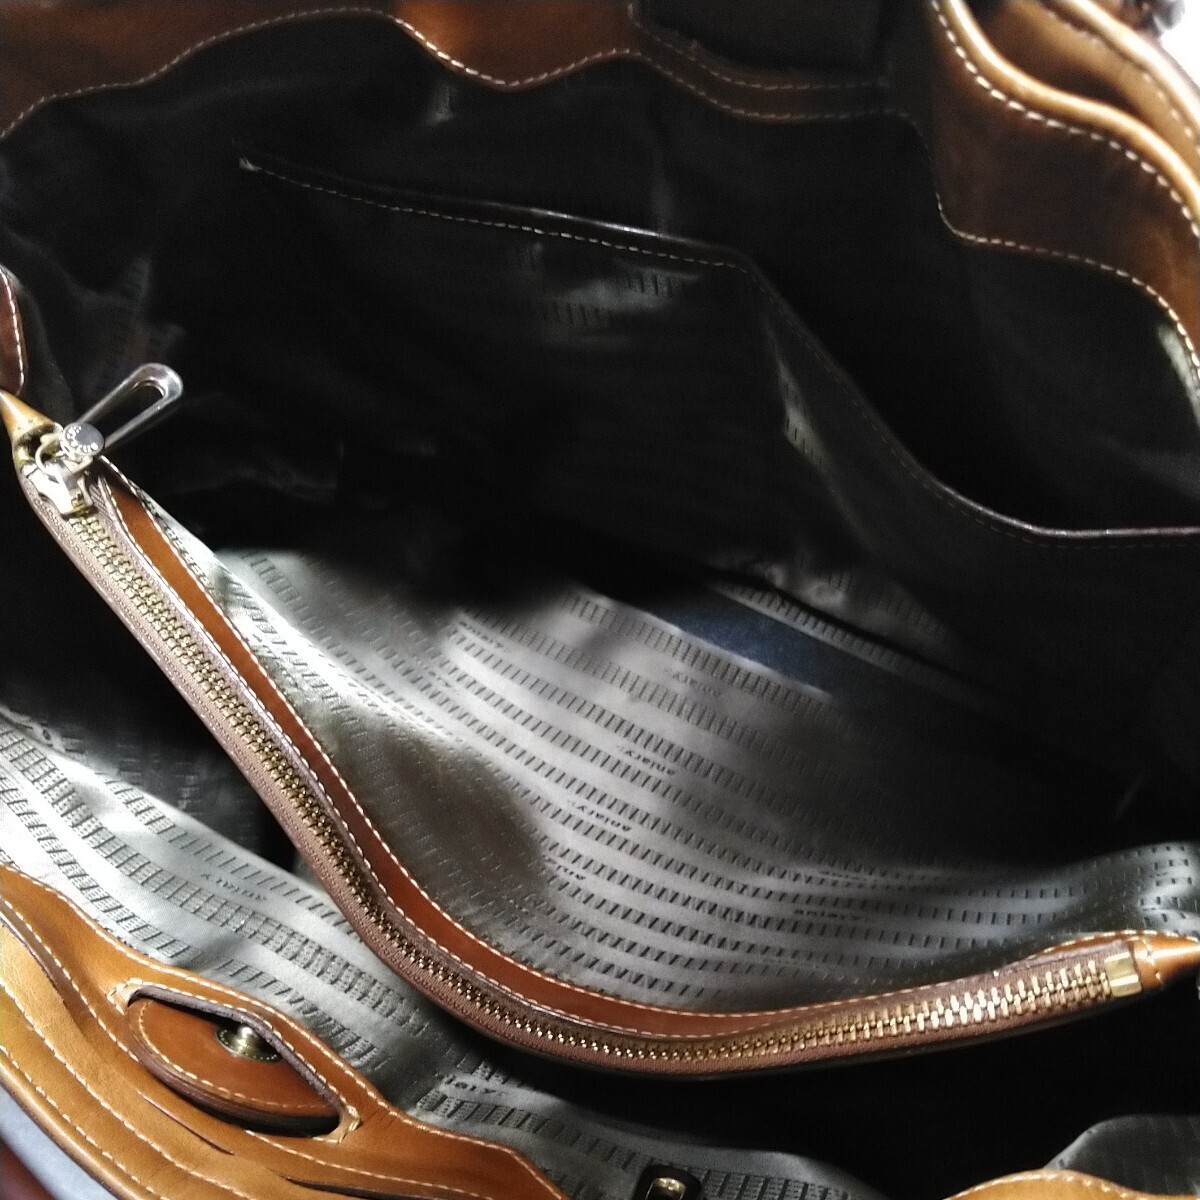  прекрасный товар aniary кожа большая сумка покупка цена 72000 иен 